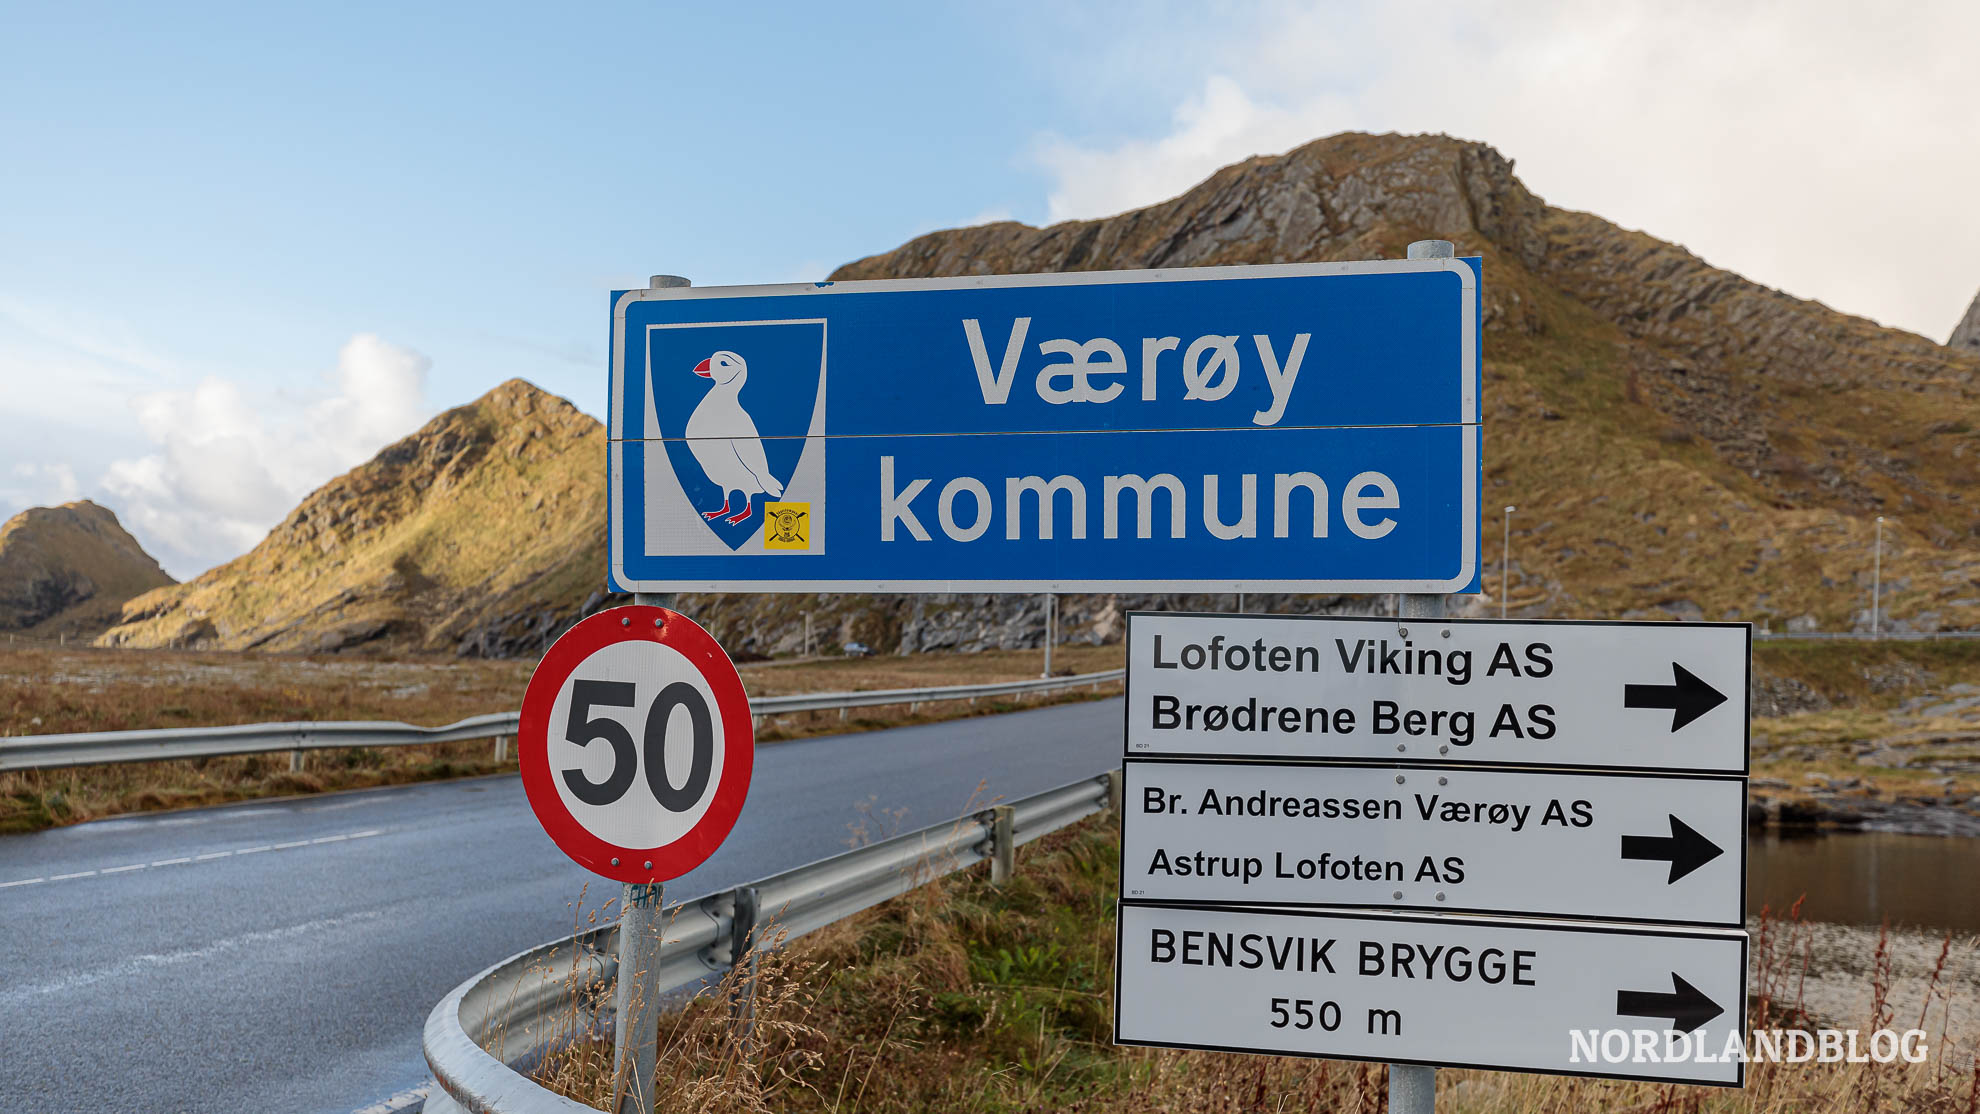 Willkommen auf Værøy